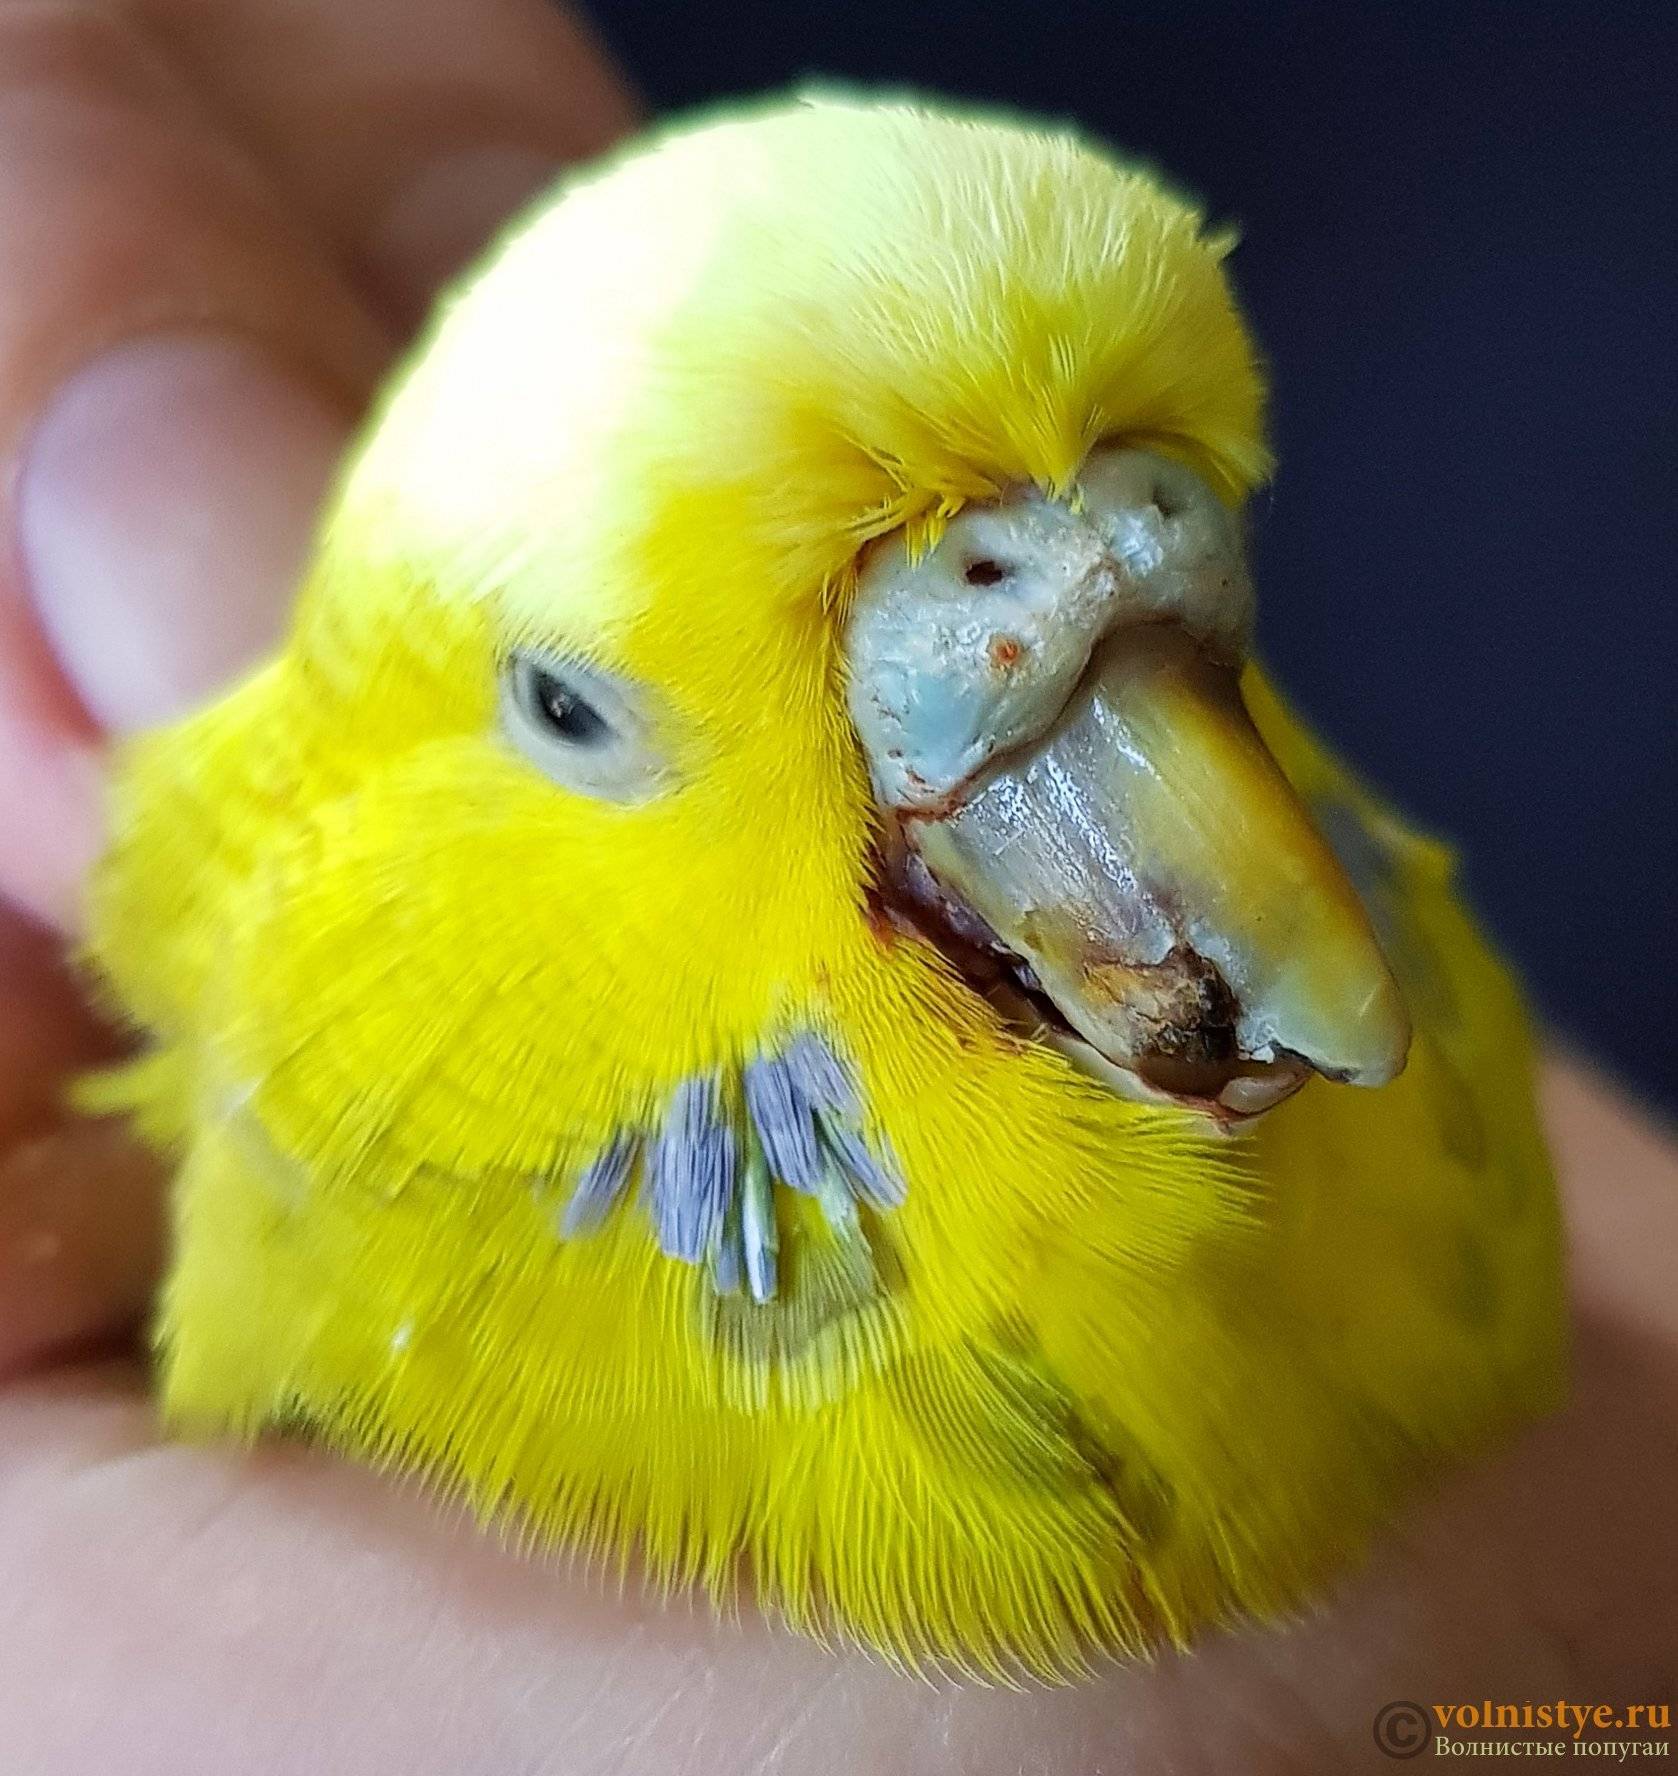 Причины и методы лечения расслоения клюва у попугаев